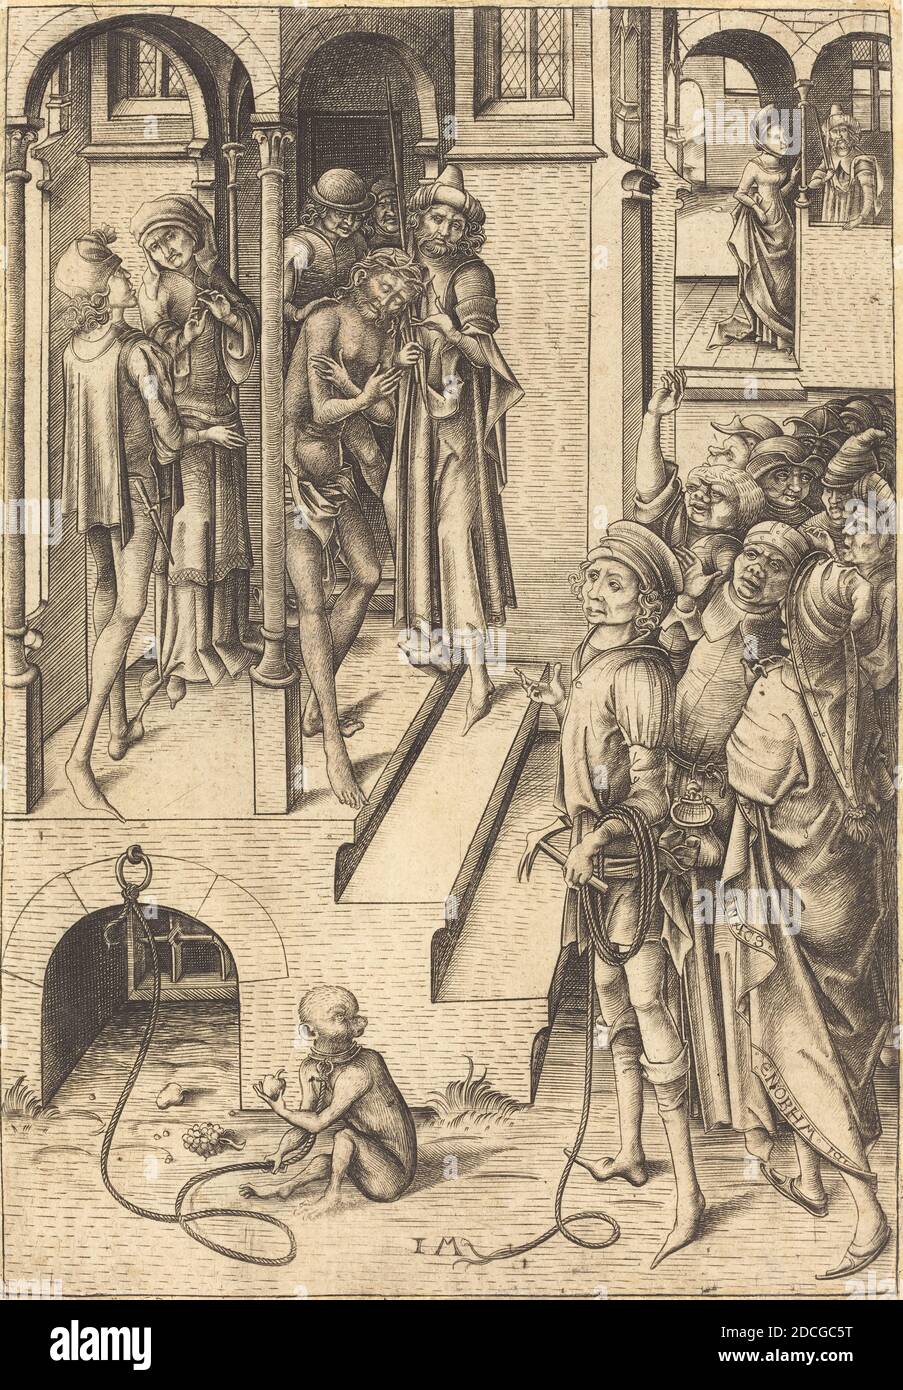 Israhel van Meckenem, (artist), German, c. 1445 - 1503, Ecce Homo, Twelve Scenes of the Pasion, (series), c. 1480, engraving Stock Photo